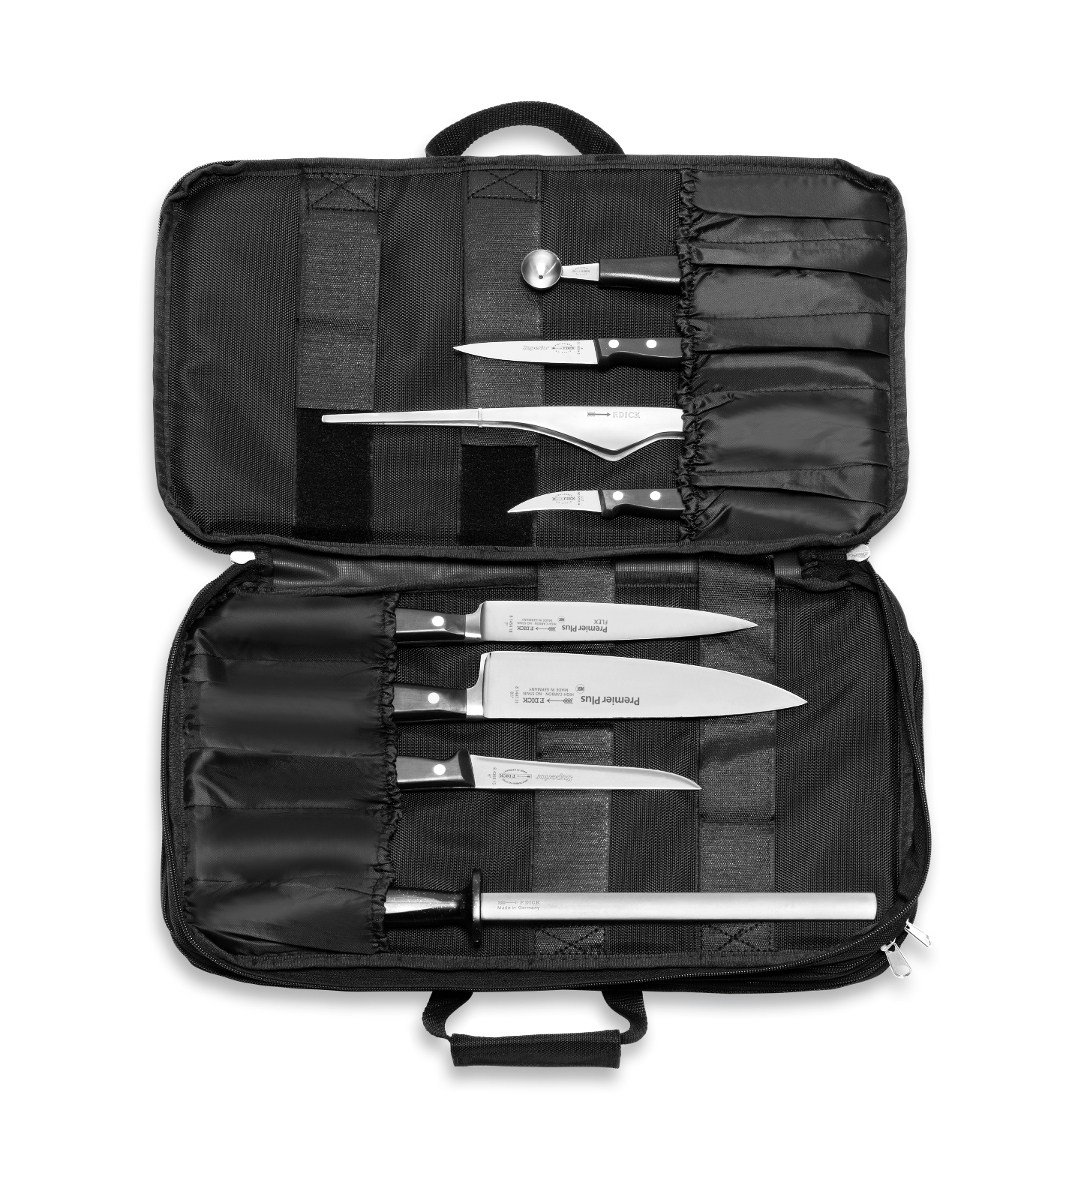 Ножи dick. Ножи e dick. Culinary Bag.